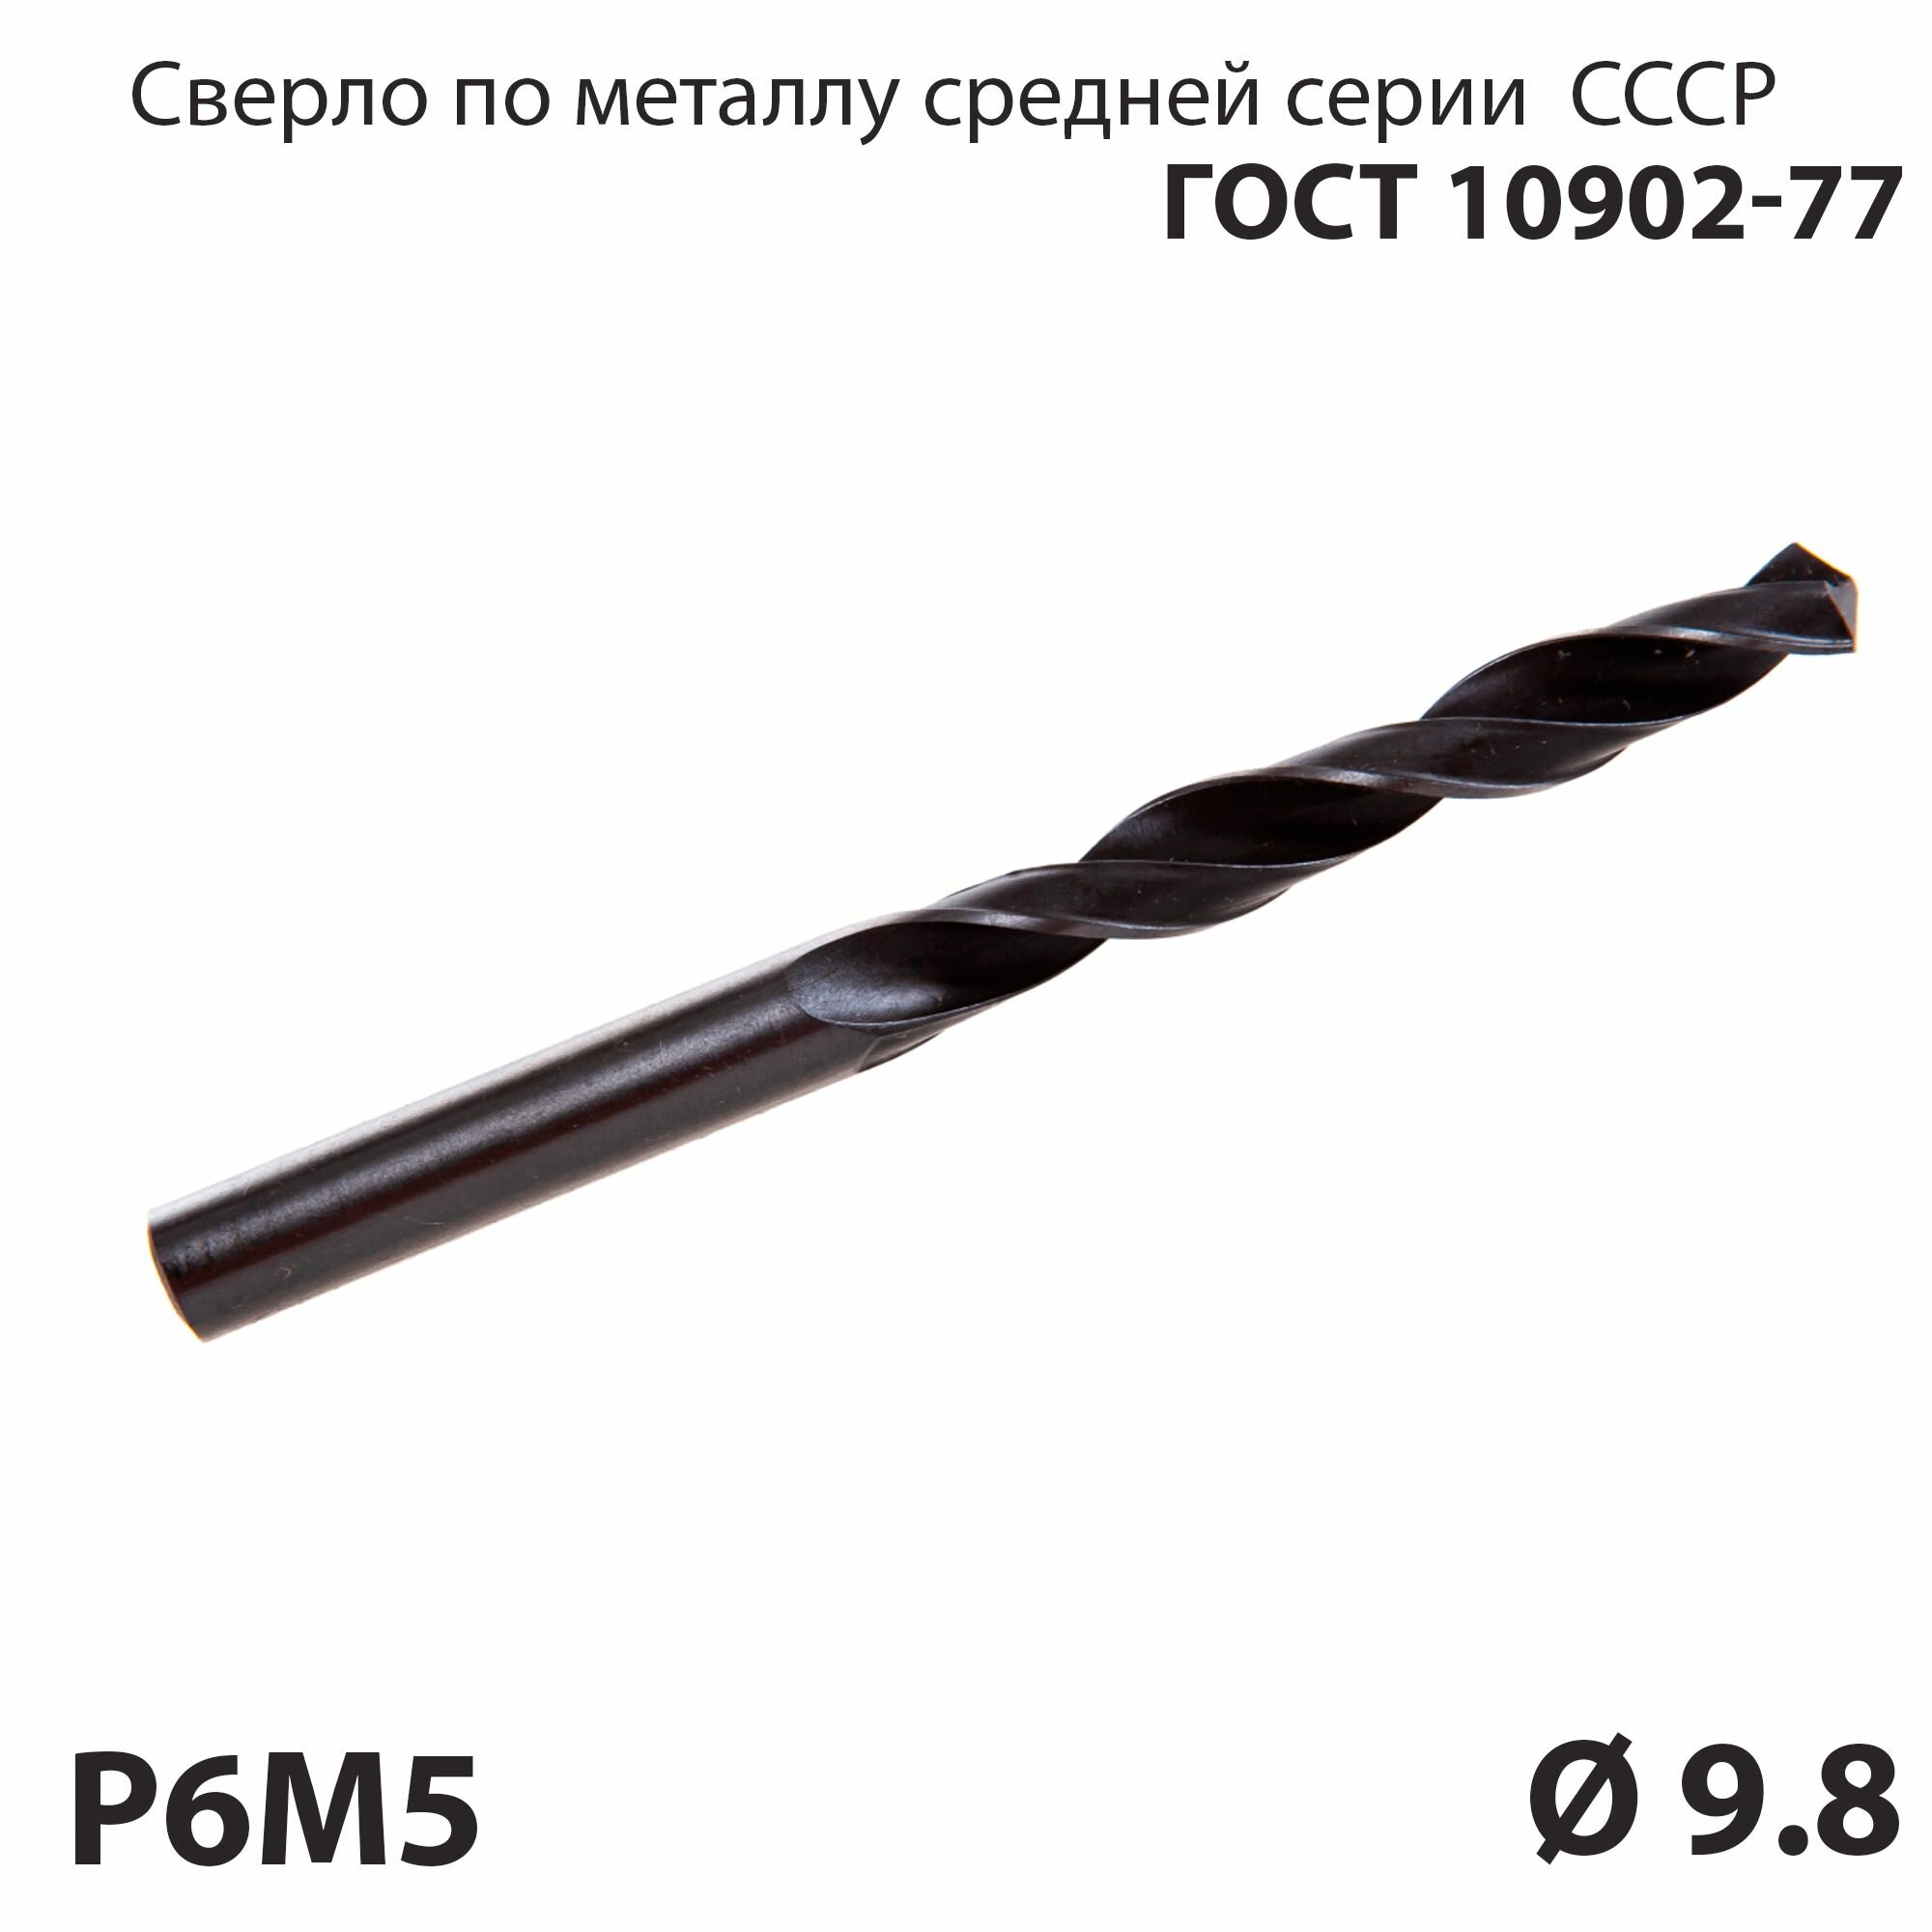 Сверло по металлу 9,8 мм средней серии P6М5 СССР ГОСТ 10902-77 (спиральное правое, ц/х)